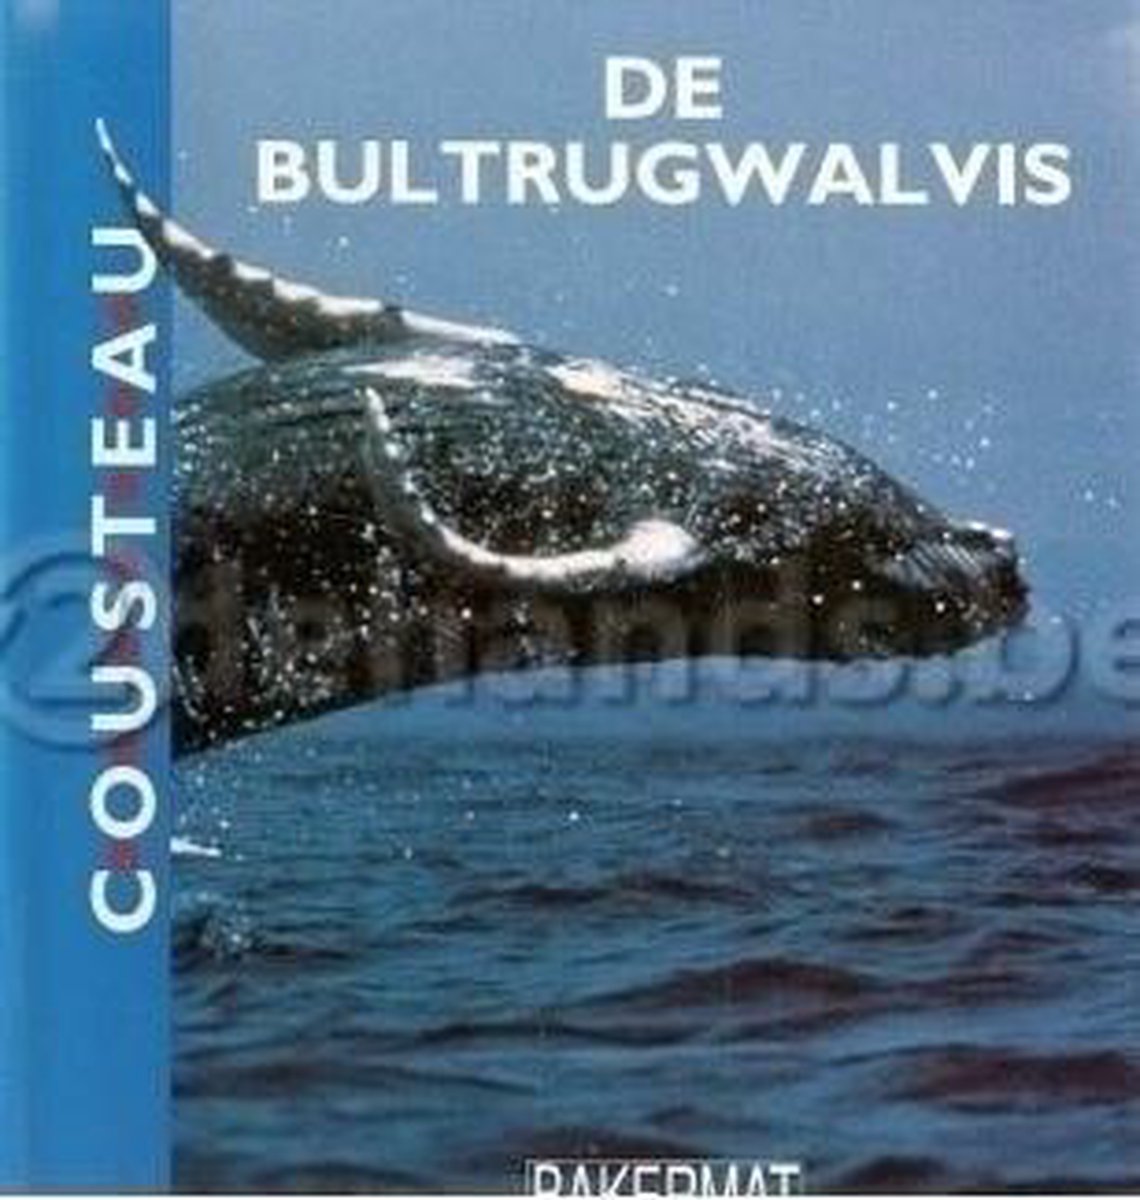 De bultrugwalvis